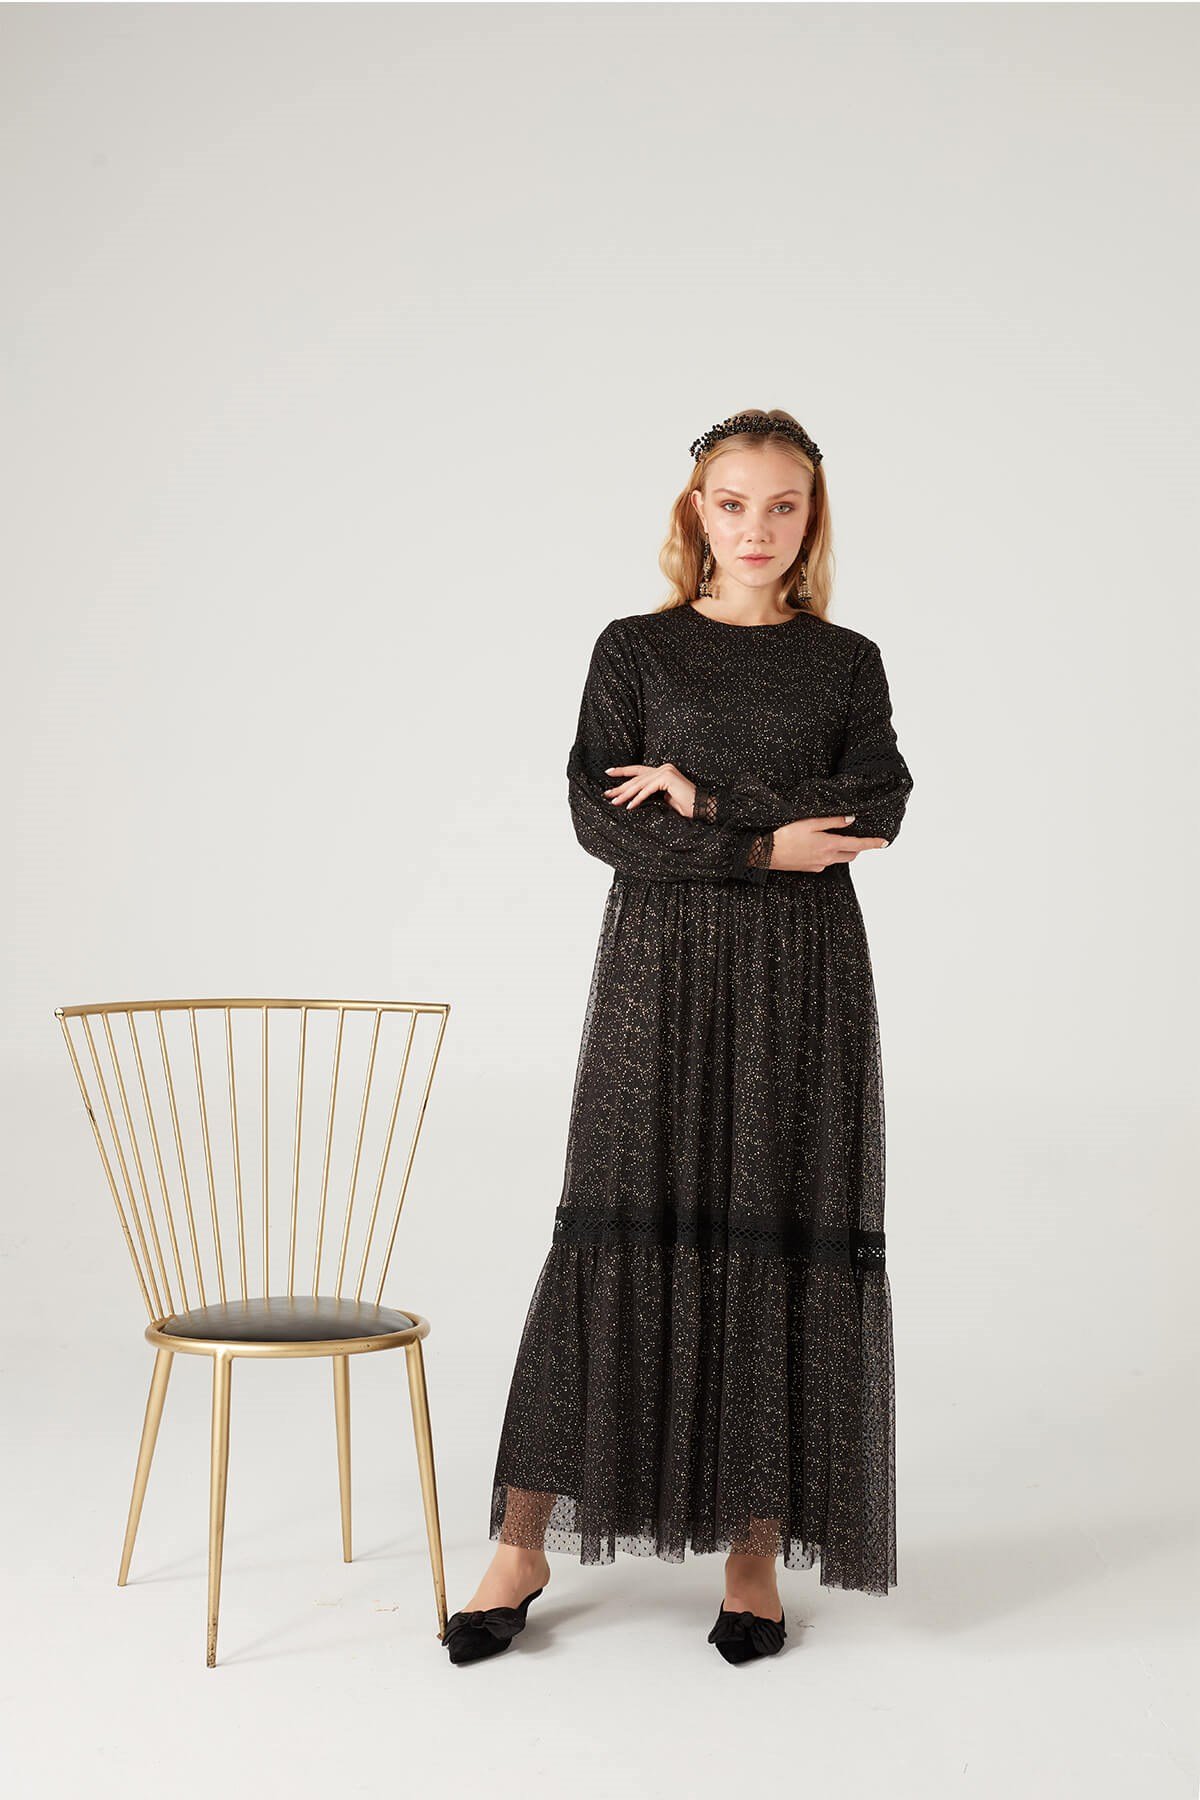 Parıltılı Elbise - JAQAR 2020 Black Koleksiyonu - Tesettür Giyim